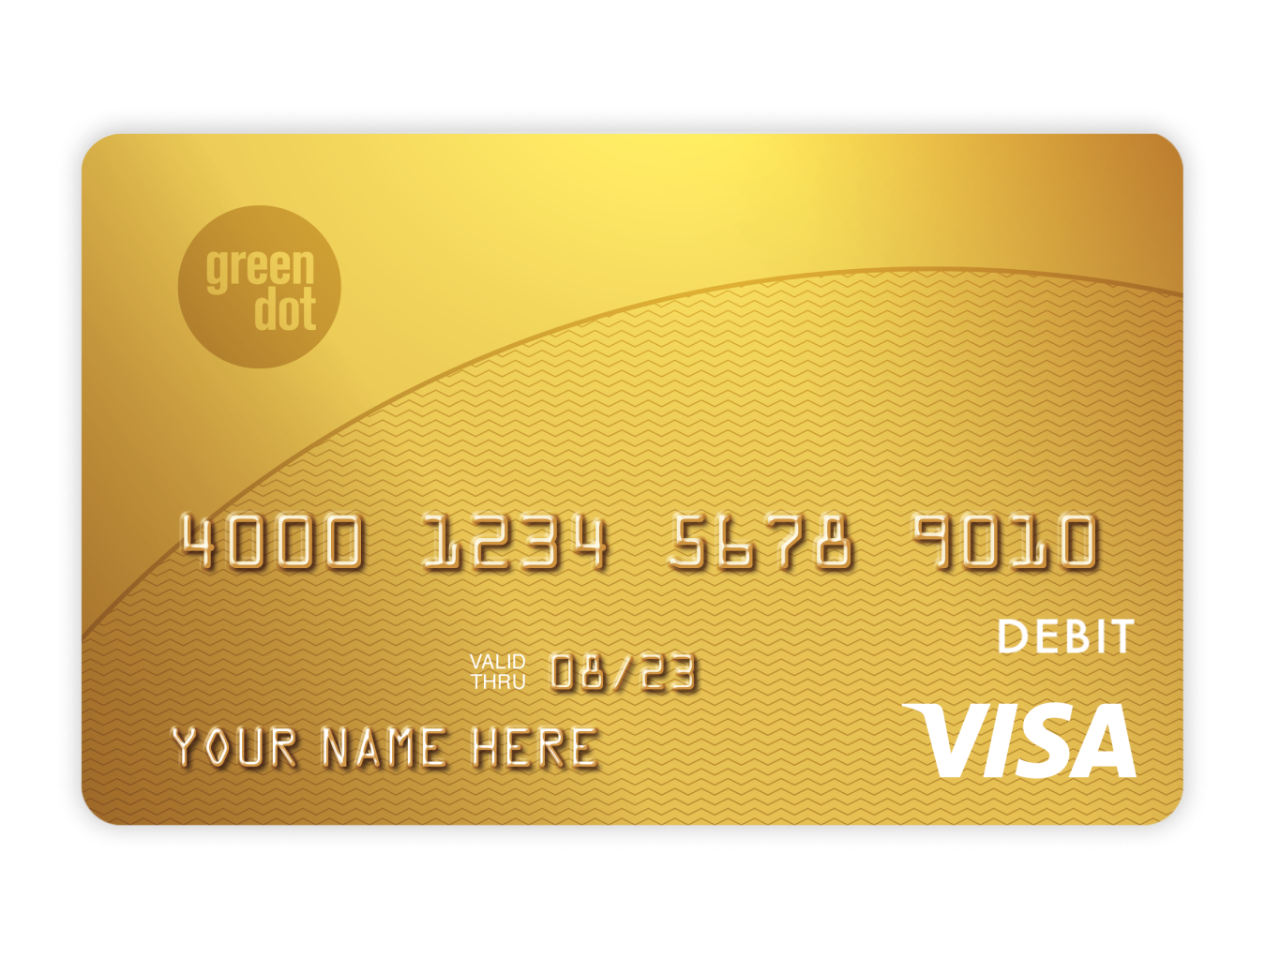 Кредитная карта. Банковская карточка. Карта виза. Золотая банковская карта.